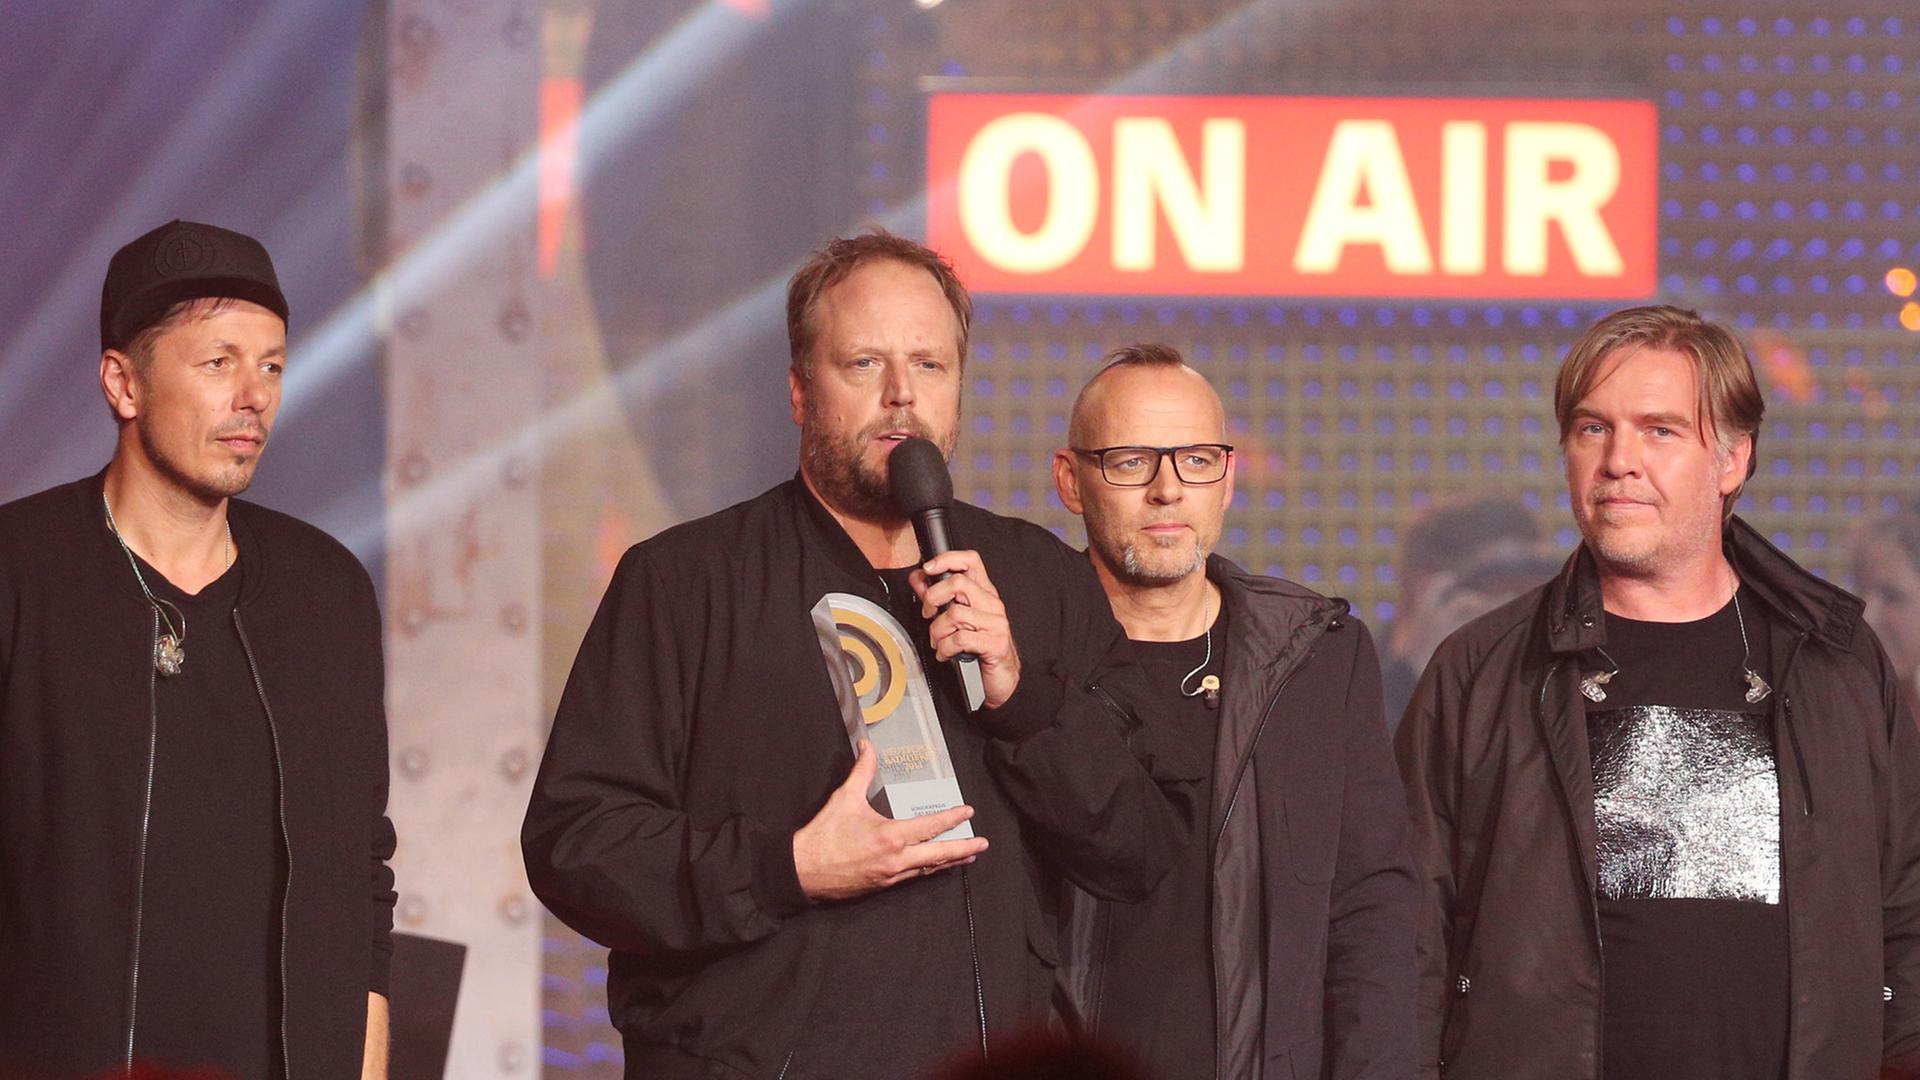 Die Fantastischen Vier bei der Verleihung des Deutschen Radiopreises 2014. (Michi Beck, Smudo, Thomas D und And. Ypsilon, v.l.)